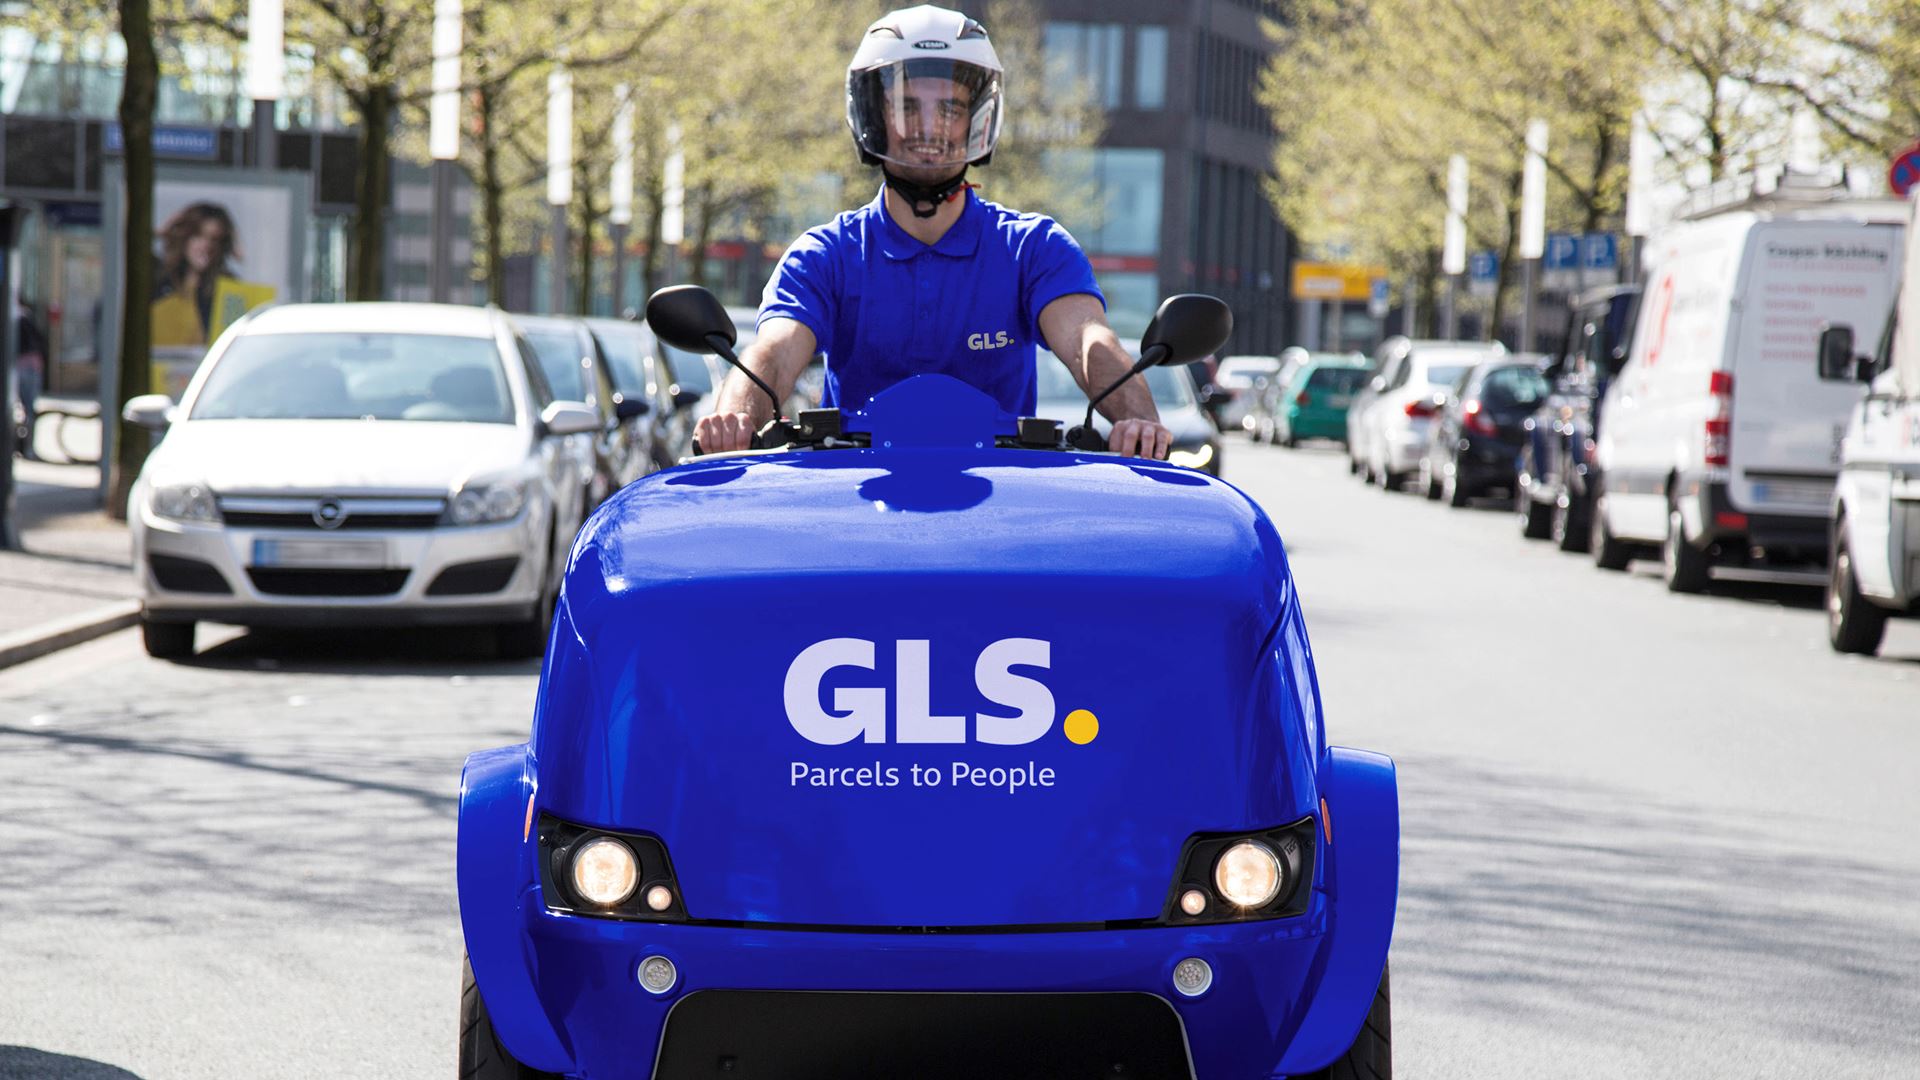 eScooter für GLS in Herne unterwegs